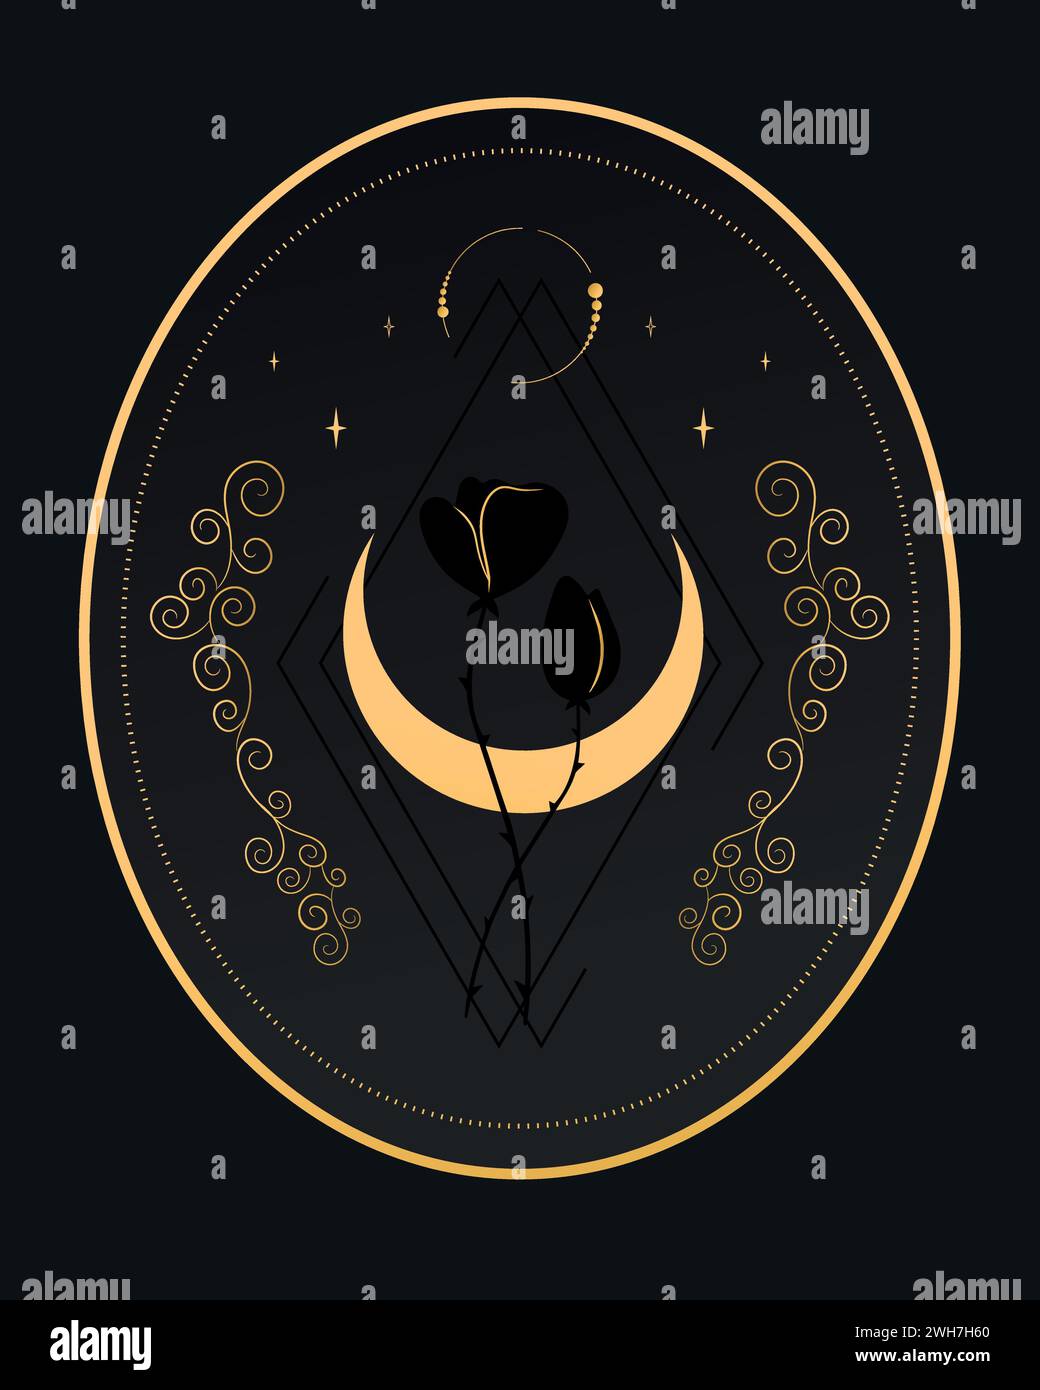 Emblème céleste abstrait avec un croissant, des étoiles et des fleurs sur fond noir. Illustration vectorielle Illustration de Vecteur